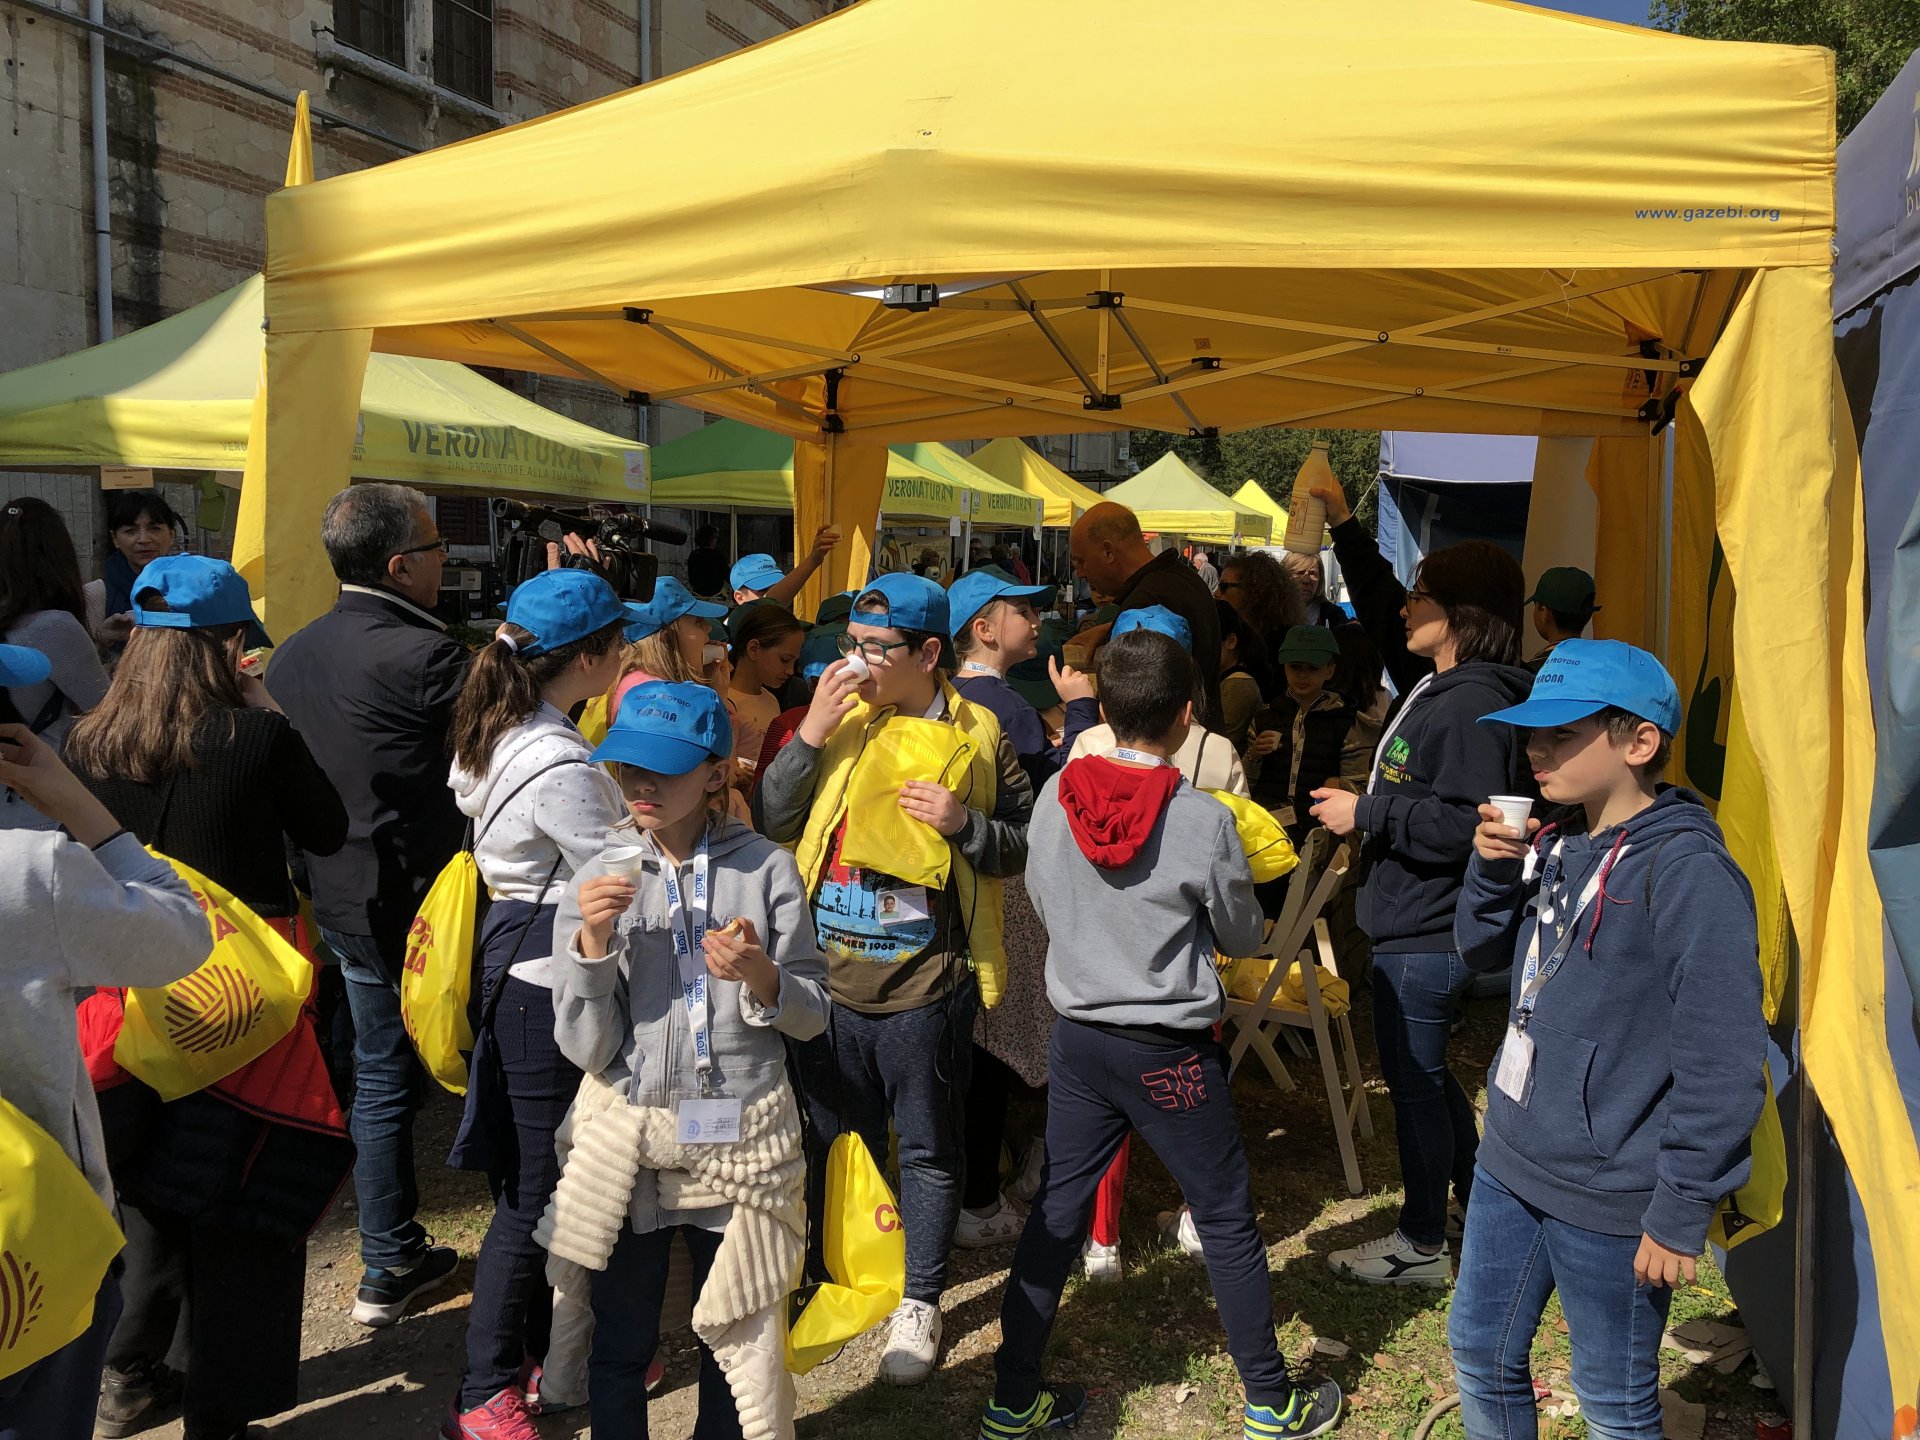 Educazione alimentare e ambientale a Verona 700 bambini al mercatino a chilometro zero